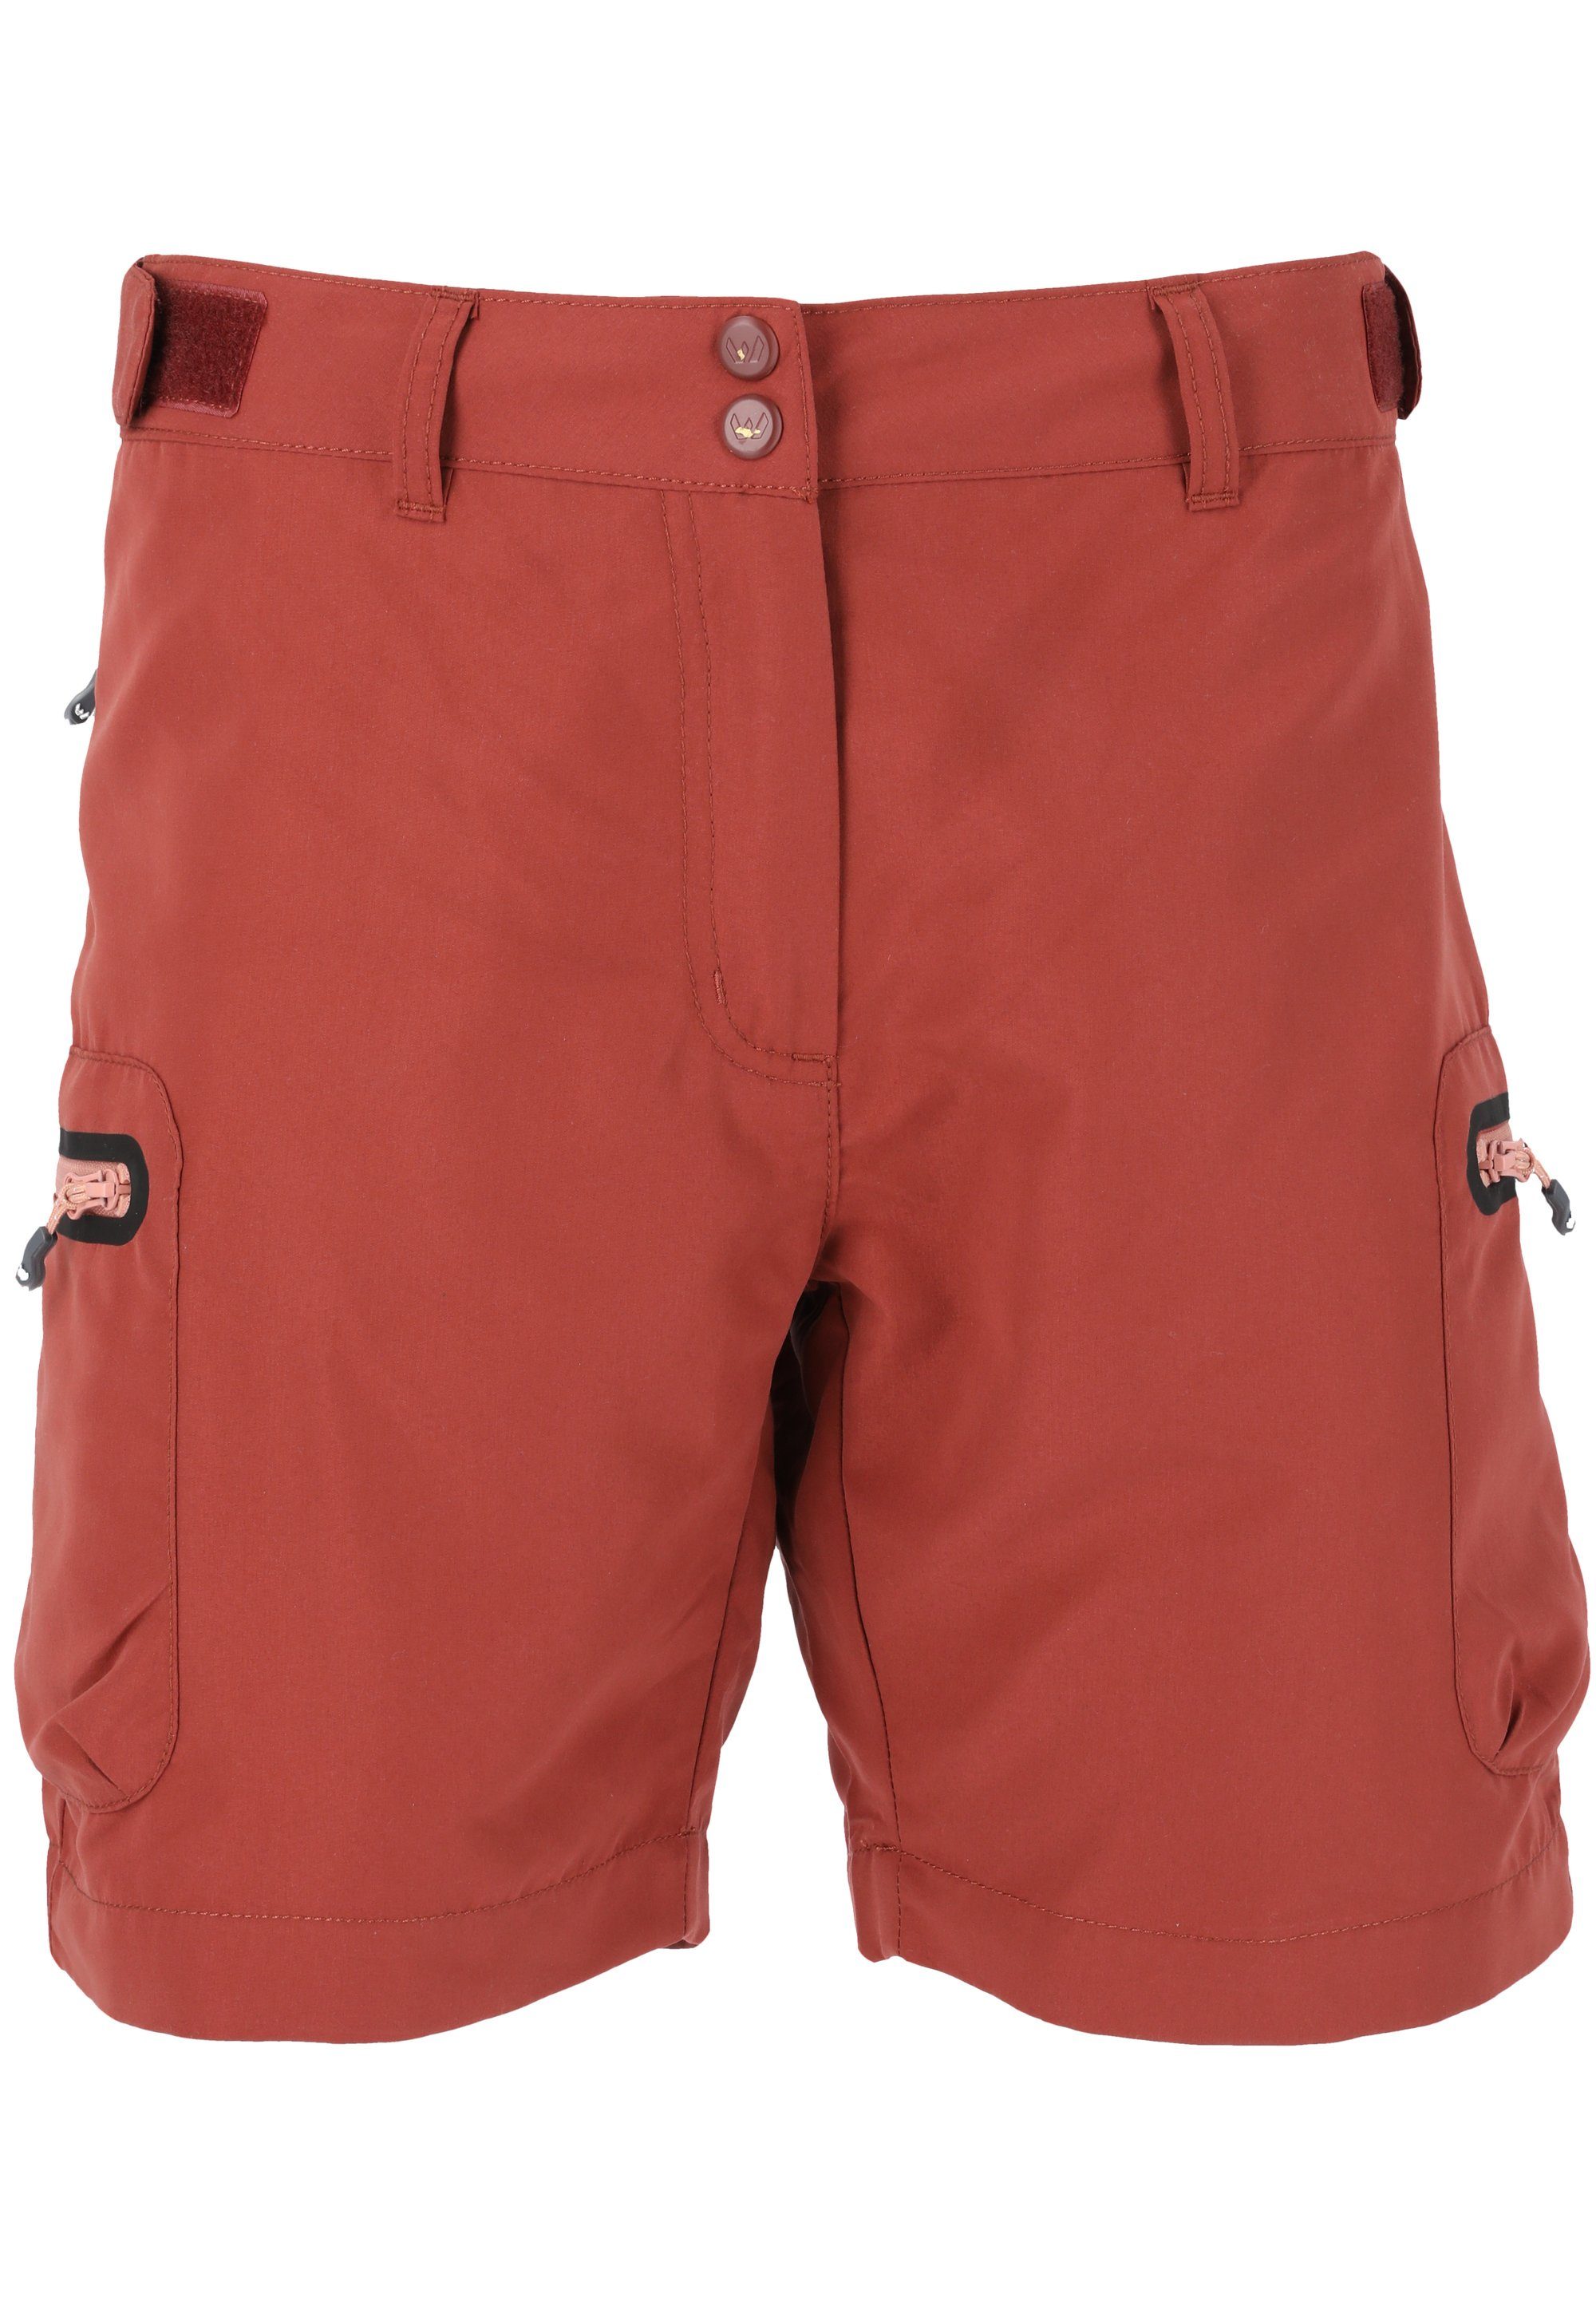 WHISTLER Shorts Stian mit praktischen Reißverschlusstaschen maroon | Sportshorts